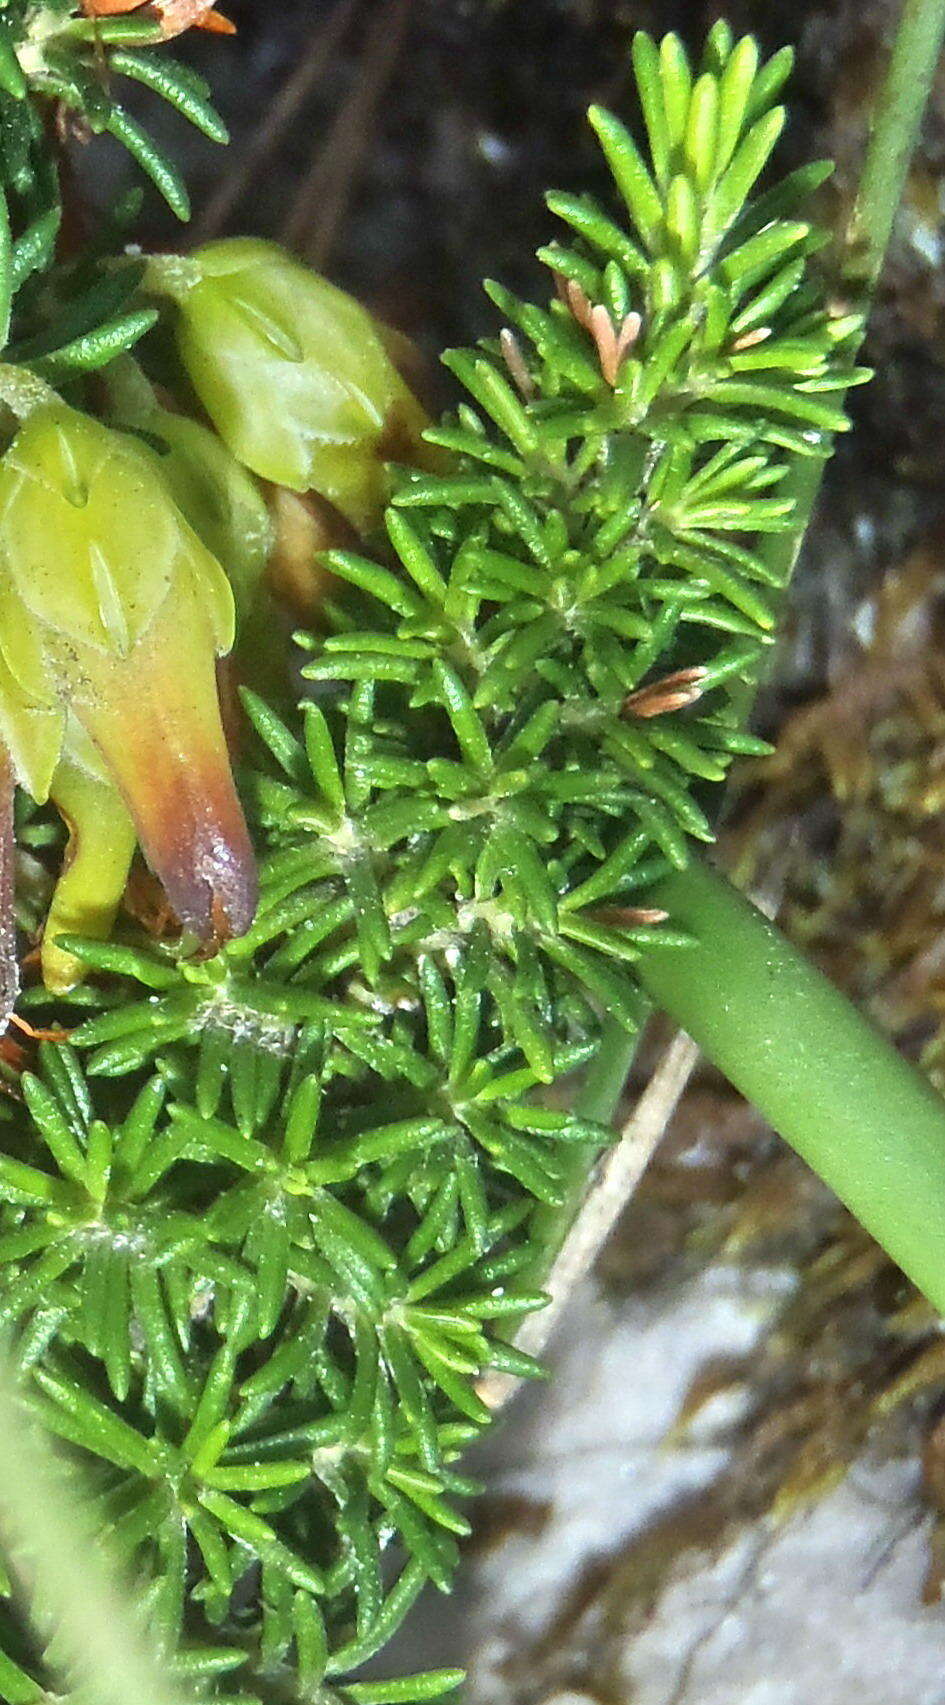 Image of Erica coccinea subsp. coccinea